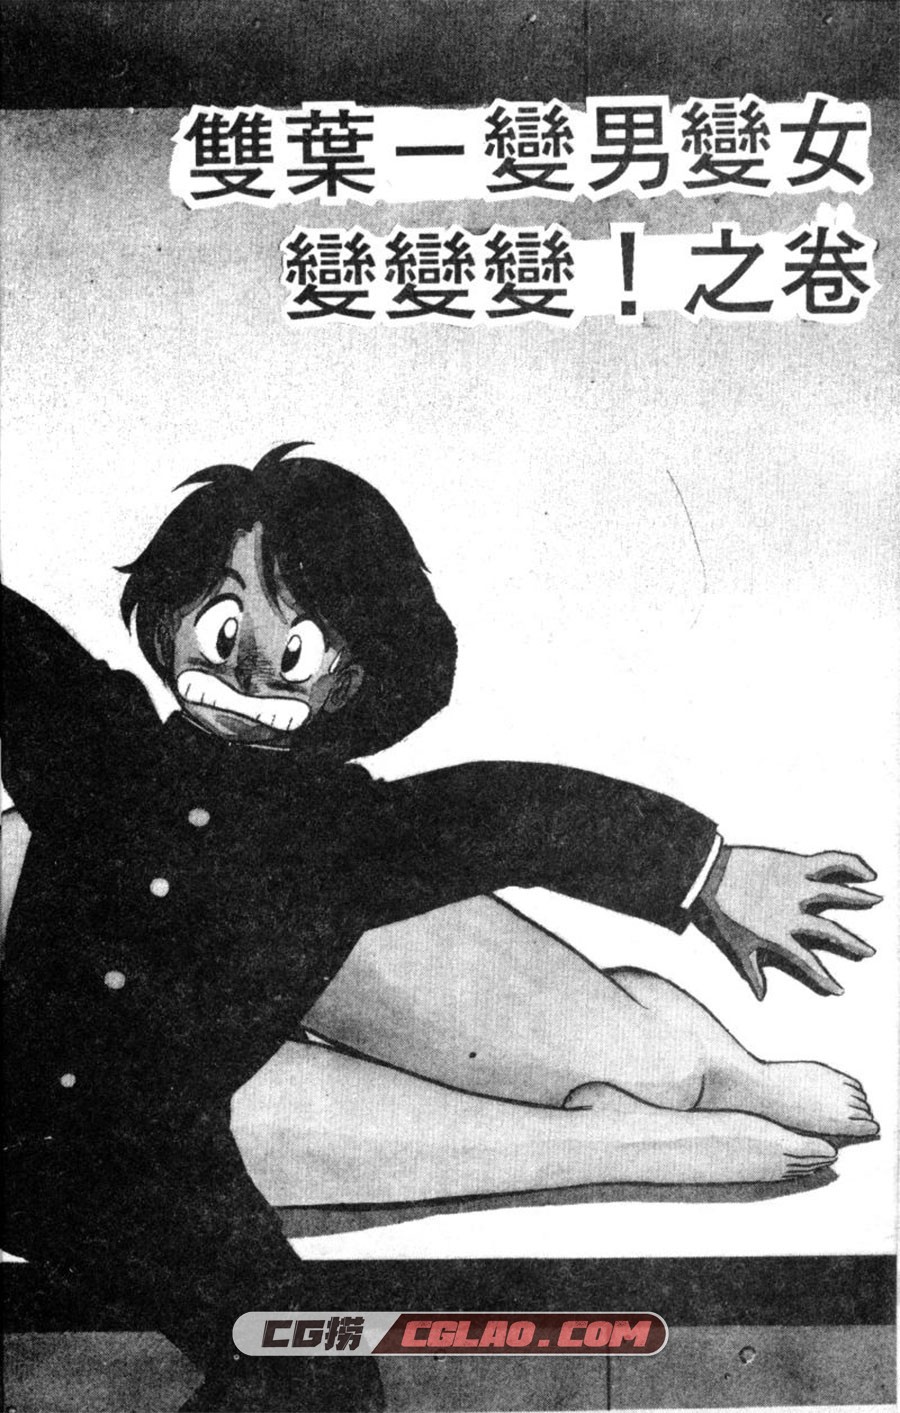 变身男孩 HiroshiAro 1-8卷 漫画全集完结下载 百度网盘下载,01-004.jpg